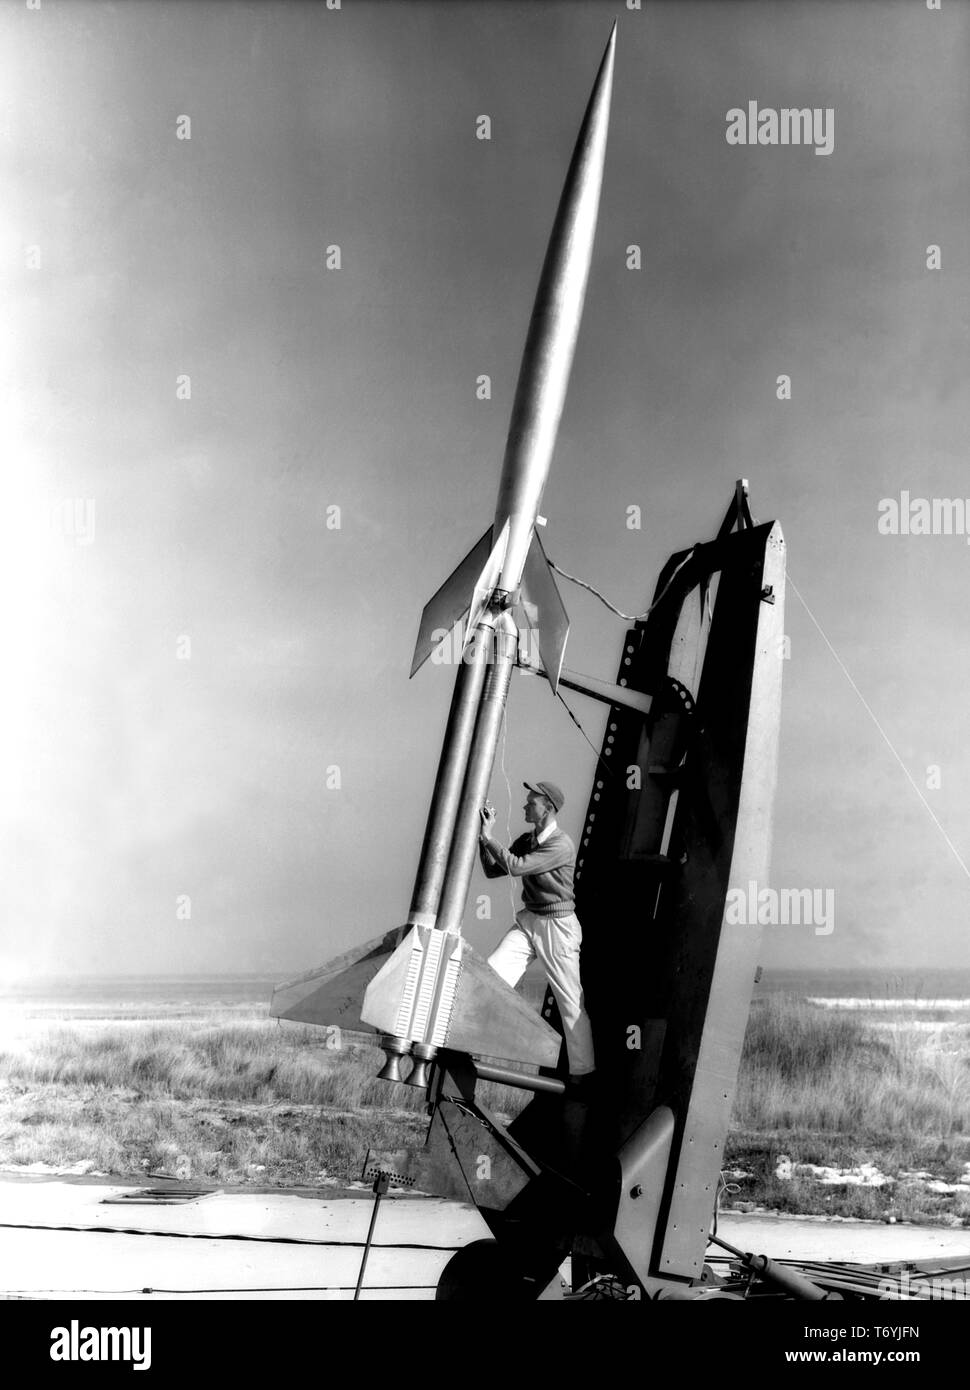 Durwood Dereng technicien de mesure de l'élévation de la double Deacon booster avant le lancement de RM-10 rocket à Wallops Flight Facility en Virginie, le 6 février 1951. Droit avec la permission de la National Aeronautics and Space Administration (NASA). () Banque D'Images